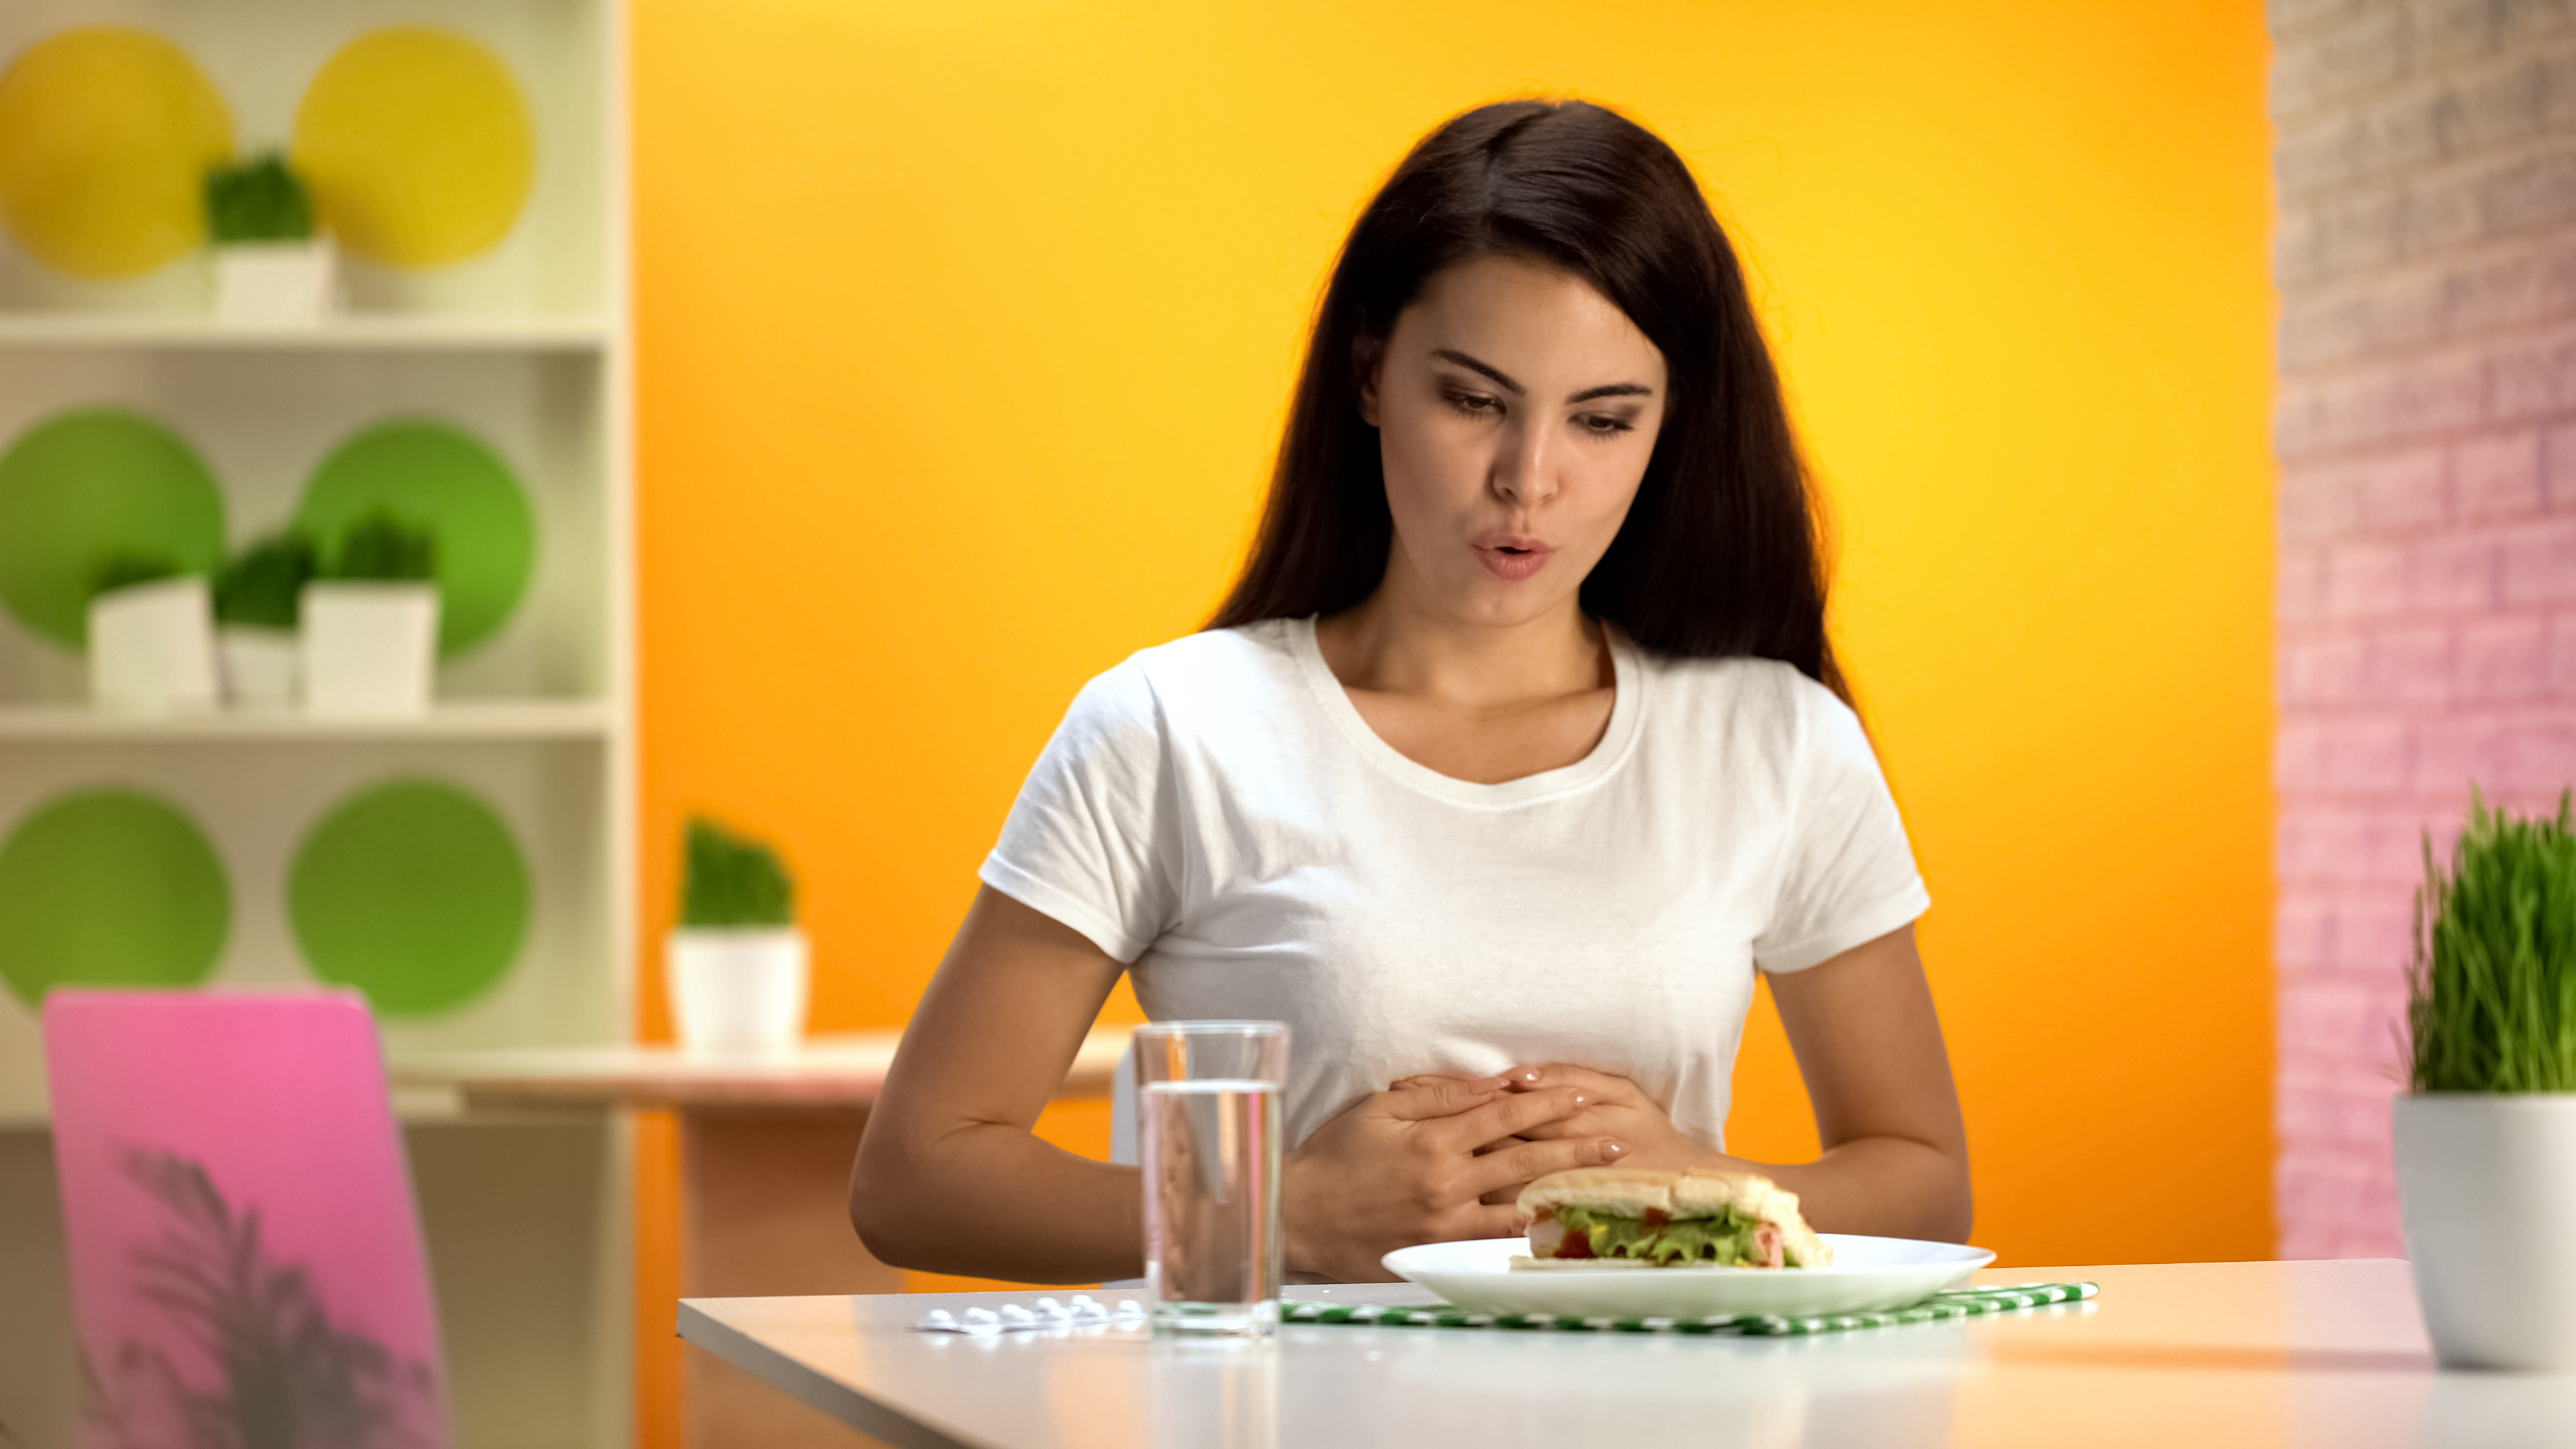 Recomendaciones nutricionales en gastritis: ¿Qué y cuándo comer? | Salud |  La Revista | El Universo